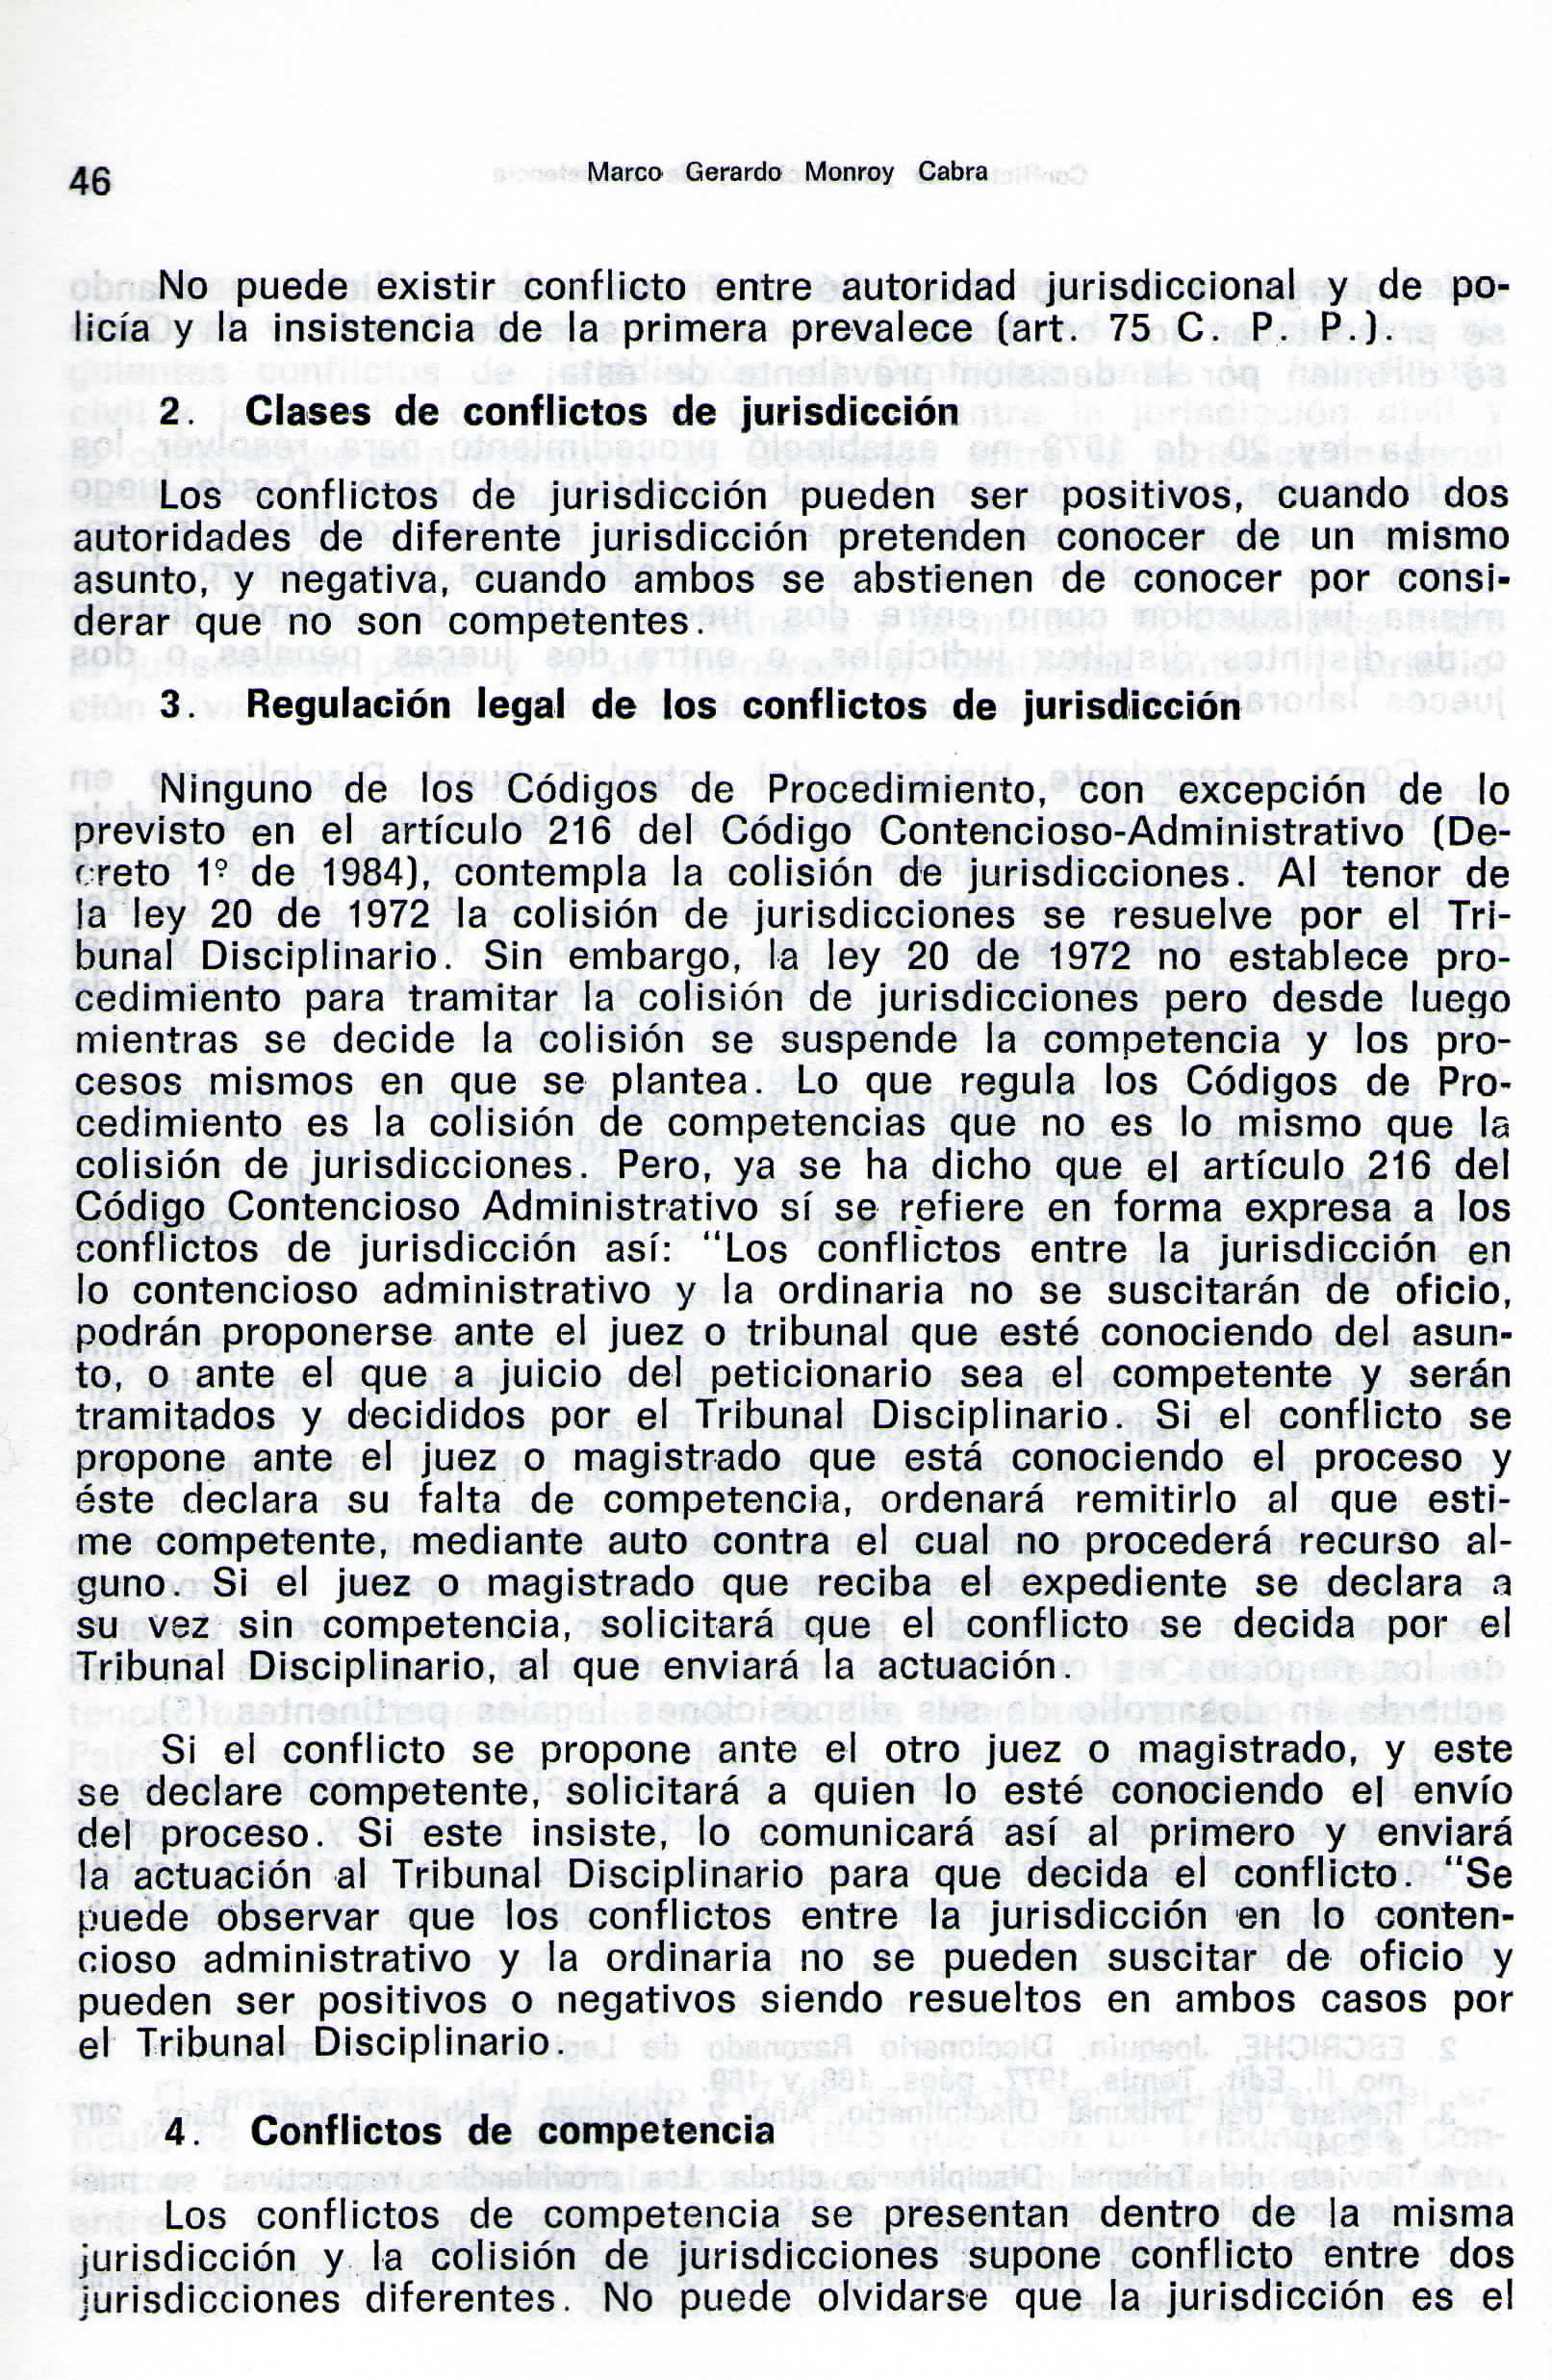 Q Marco Gerardo Monroy Cabra No puede existir conflicto entre autoridad jurisdiccional y de policía y la insistencia de la primera prevalece (art. 75 C. P. P.). 2.